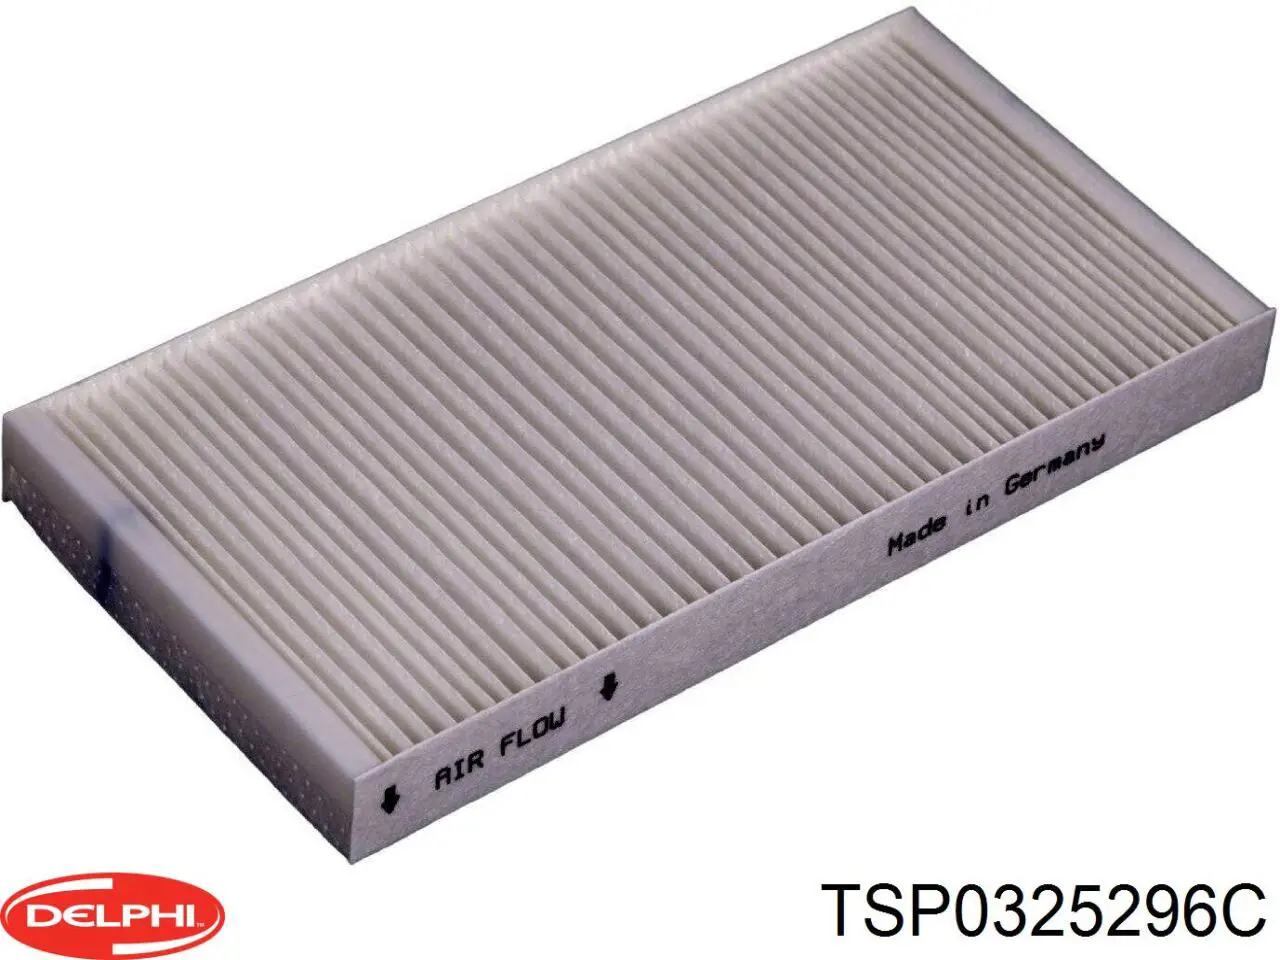 TSP0325296C Delphi filtro habitáculo